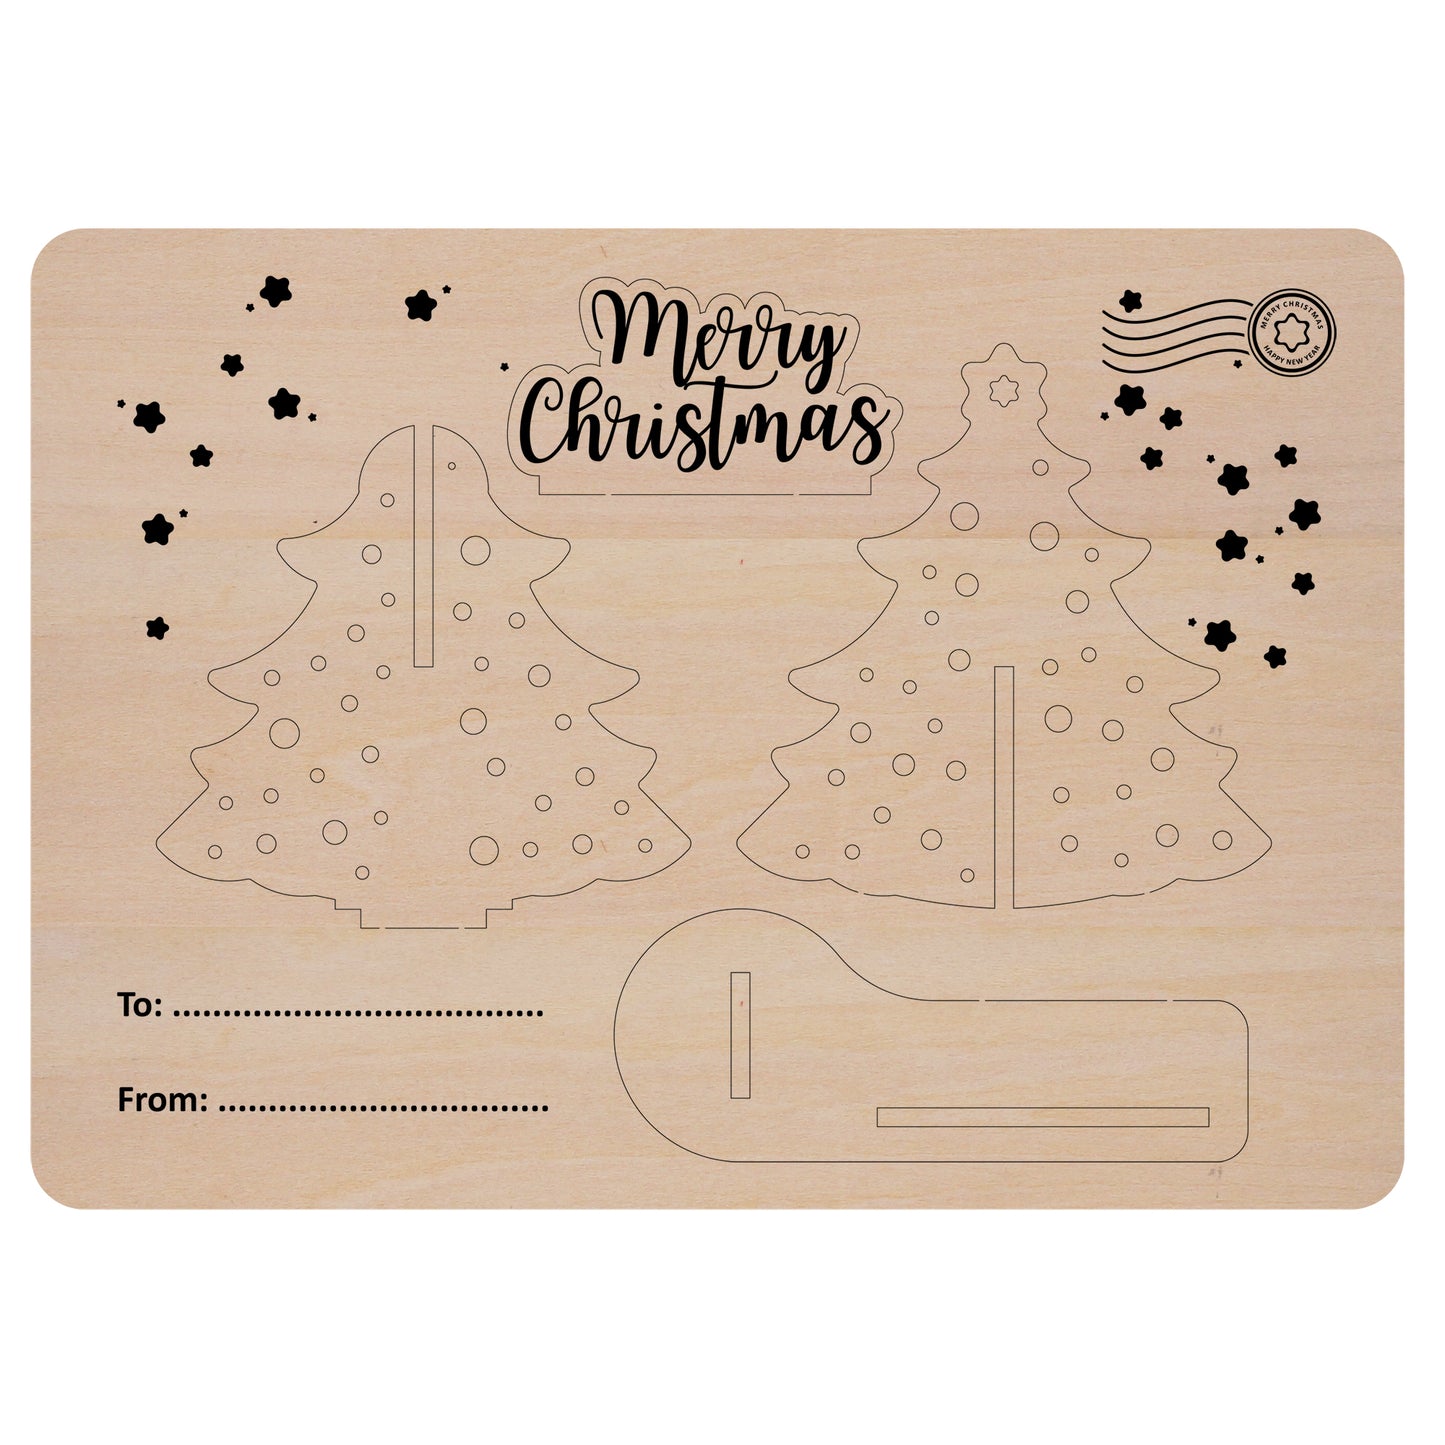 立體聖誕樹 A6明信片 立體聖誕卡片 立體聖誕節卡片 3D聖誕卡片 聖誕拼圖卡片 木製聖誕卡片 可自行彩繪或書寫